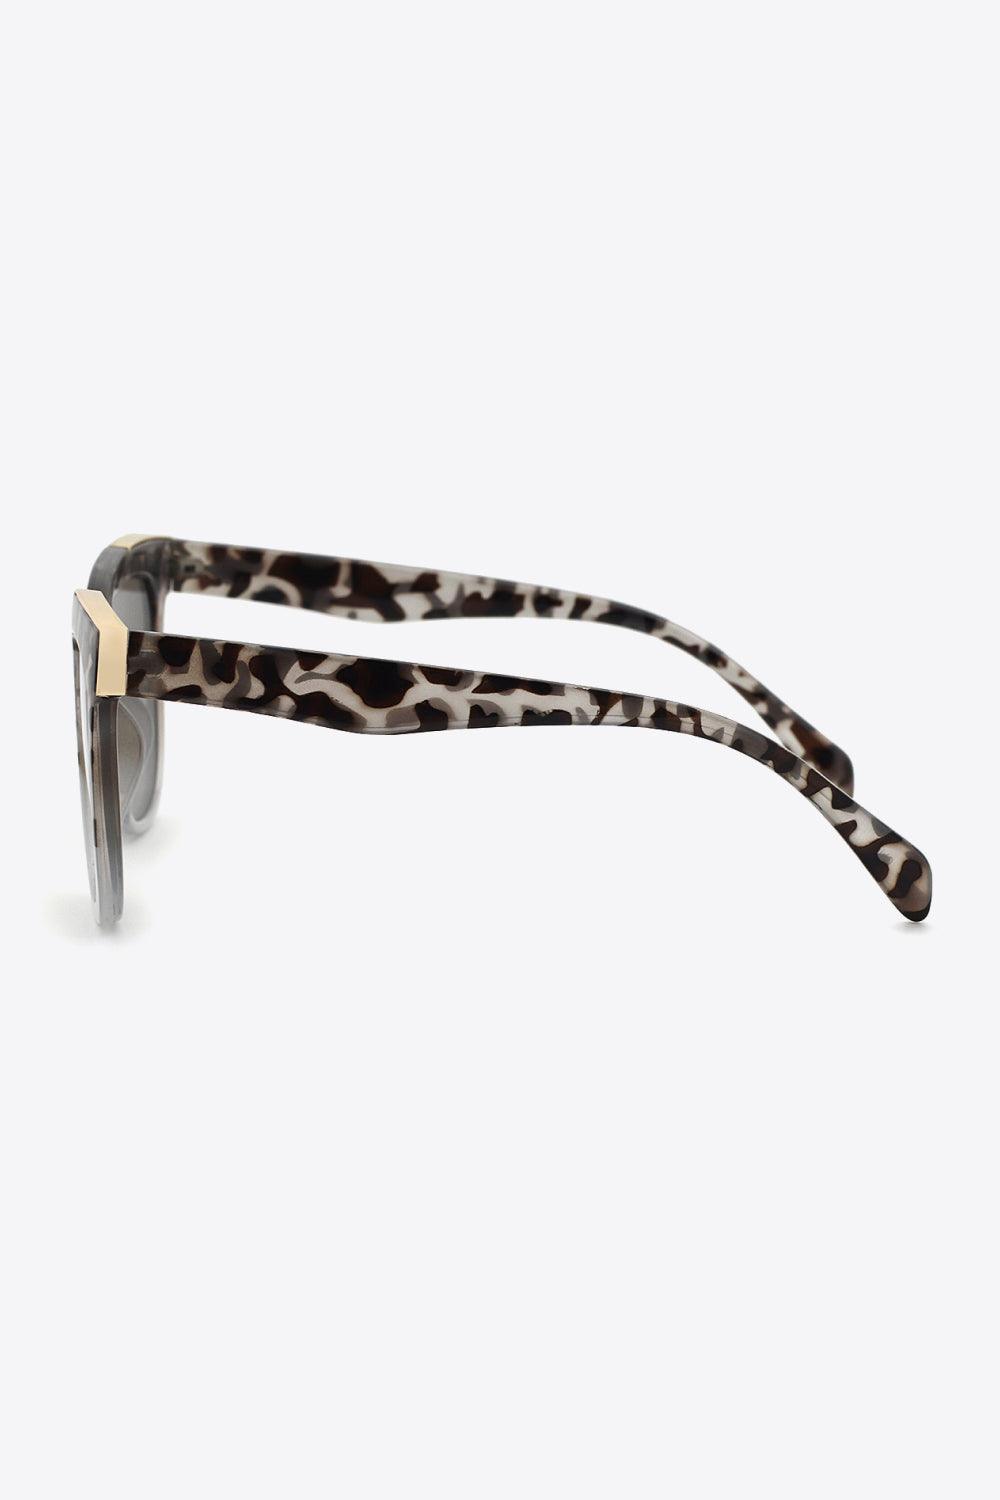 Women's Tortoiseshell Frame Square Sunglasses - MXSTUDIO.COM